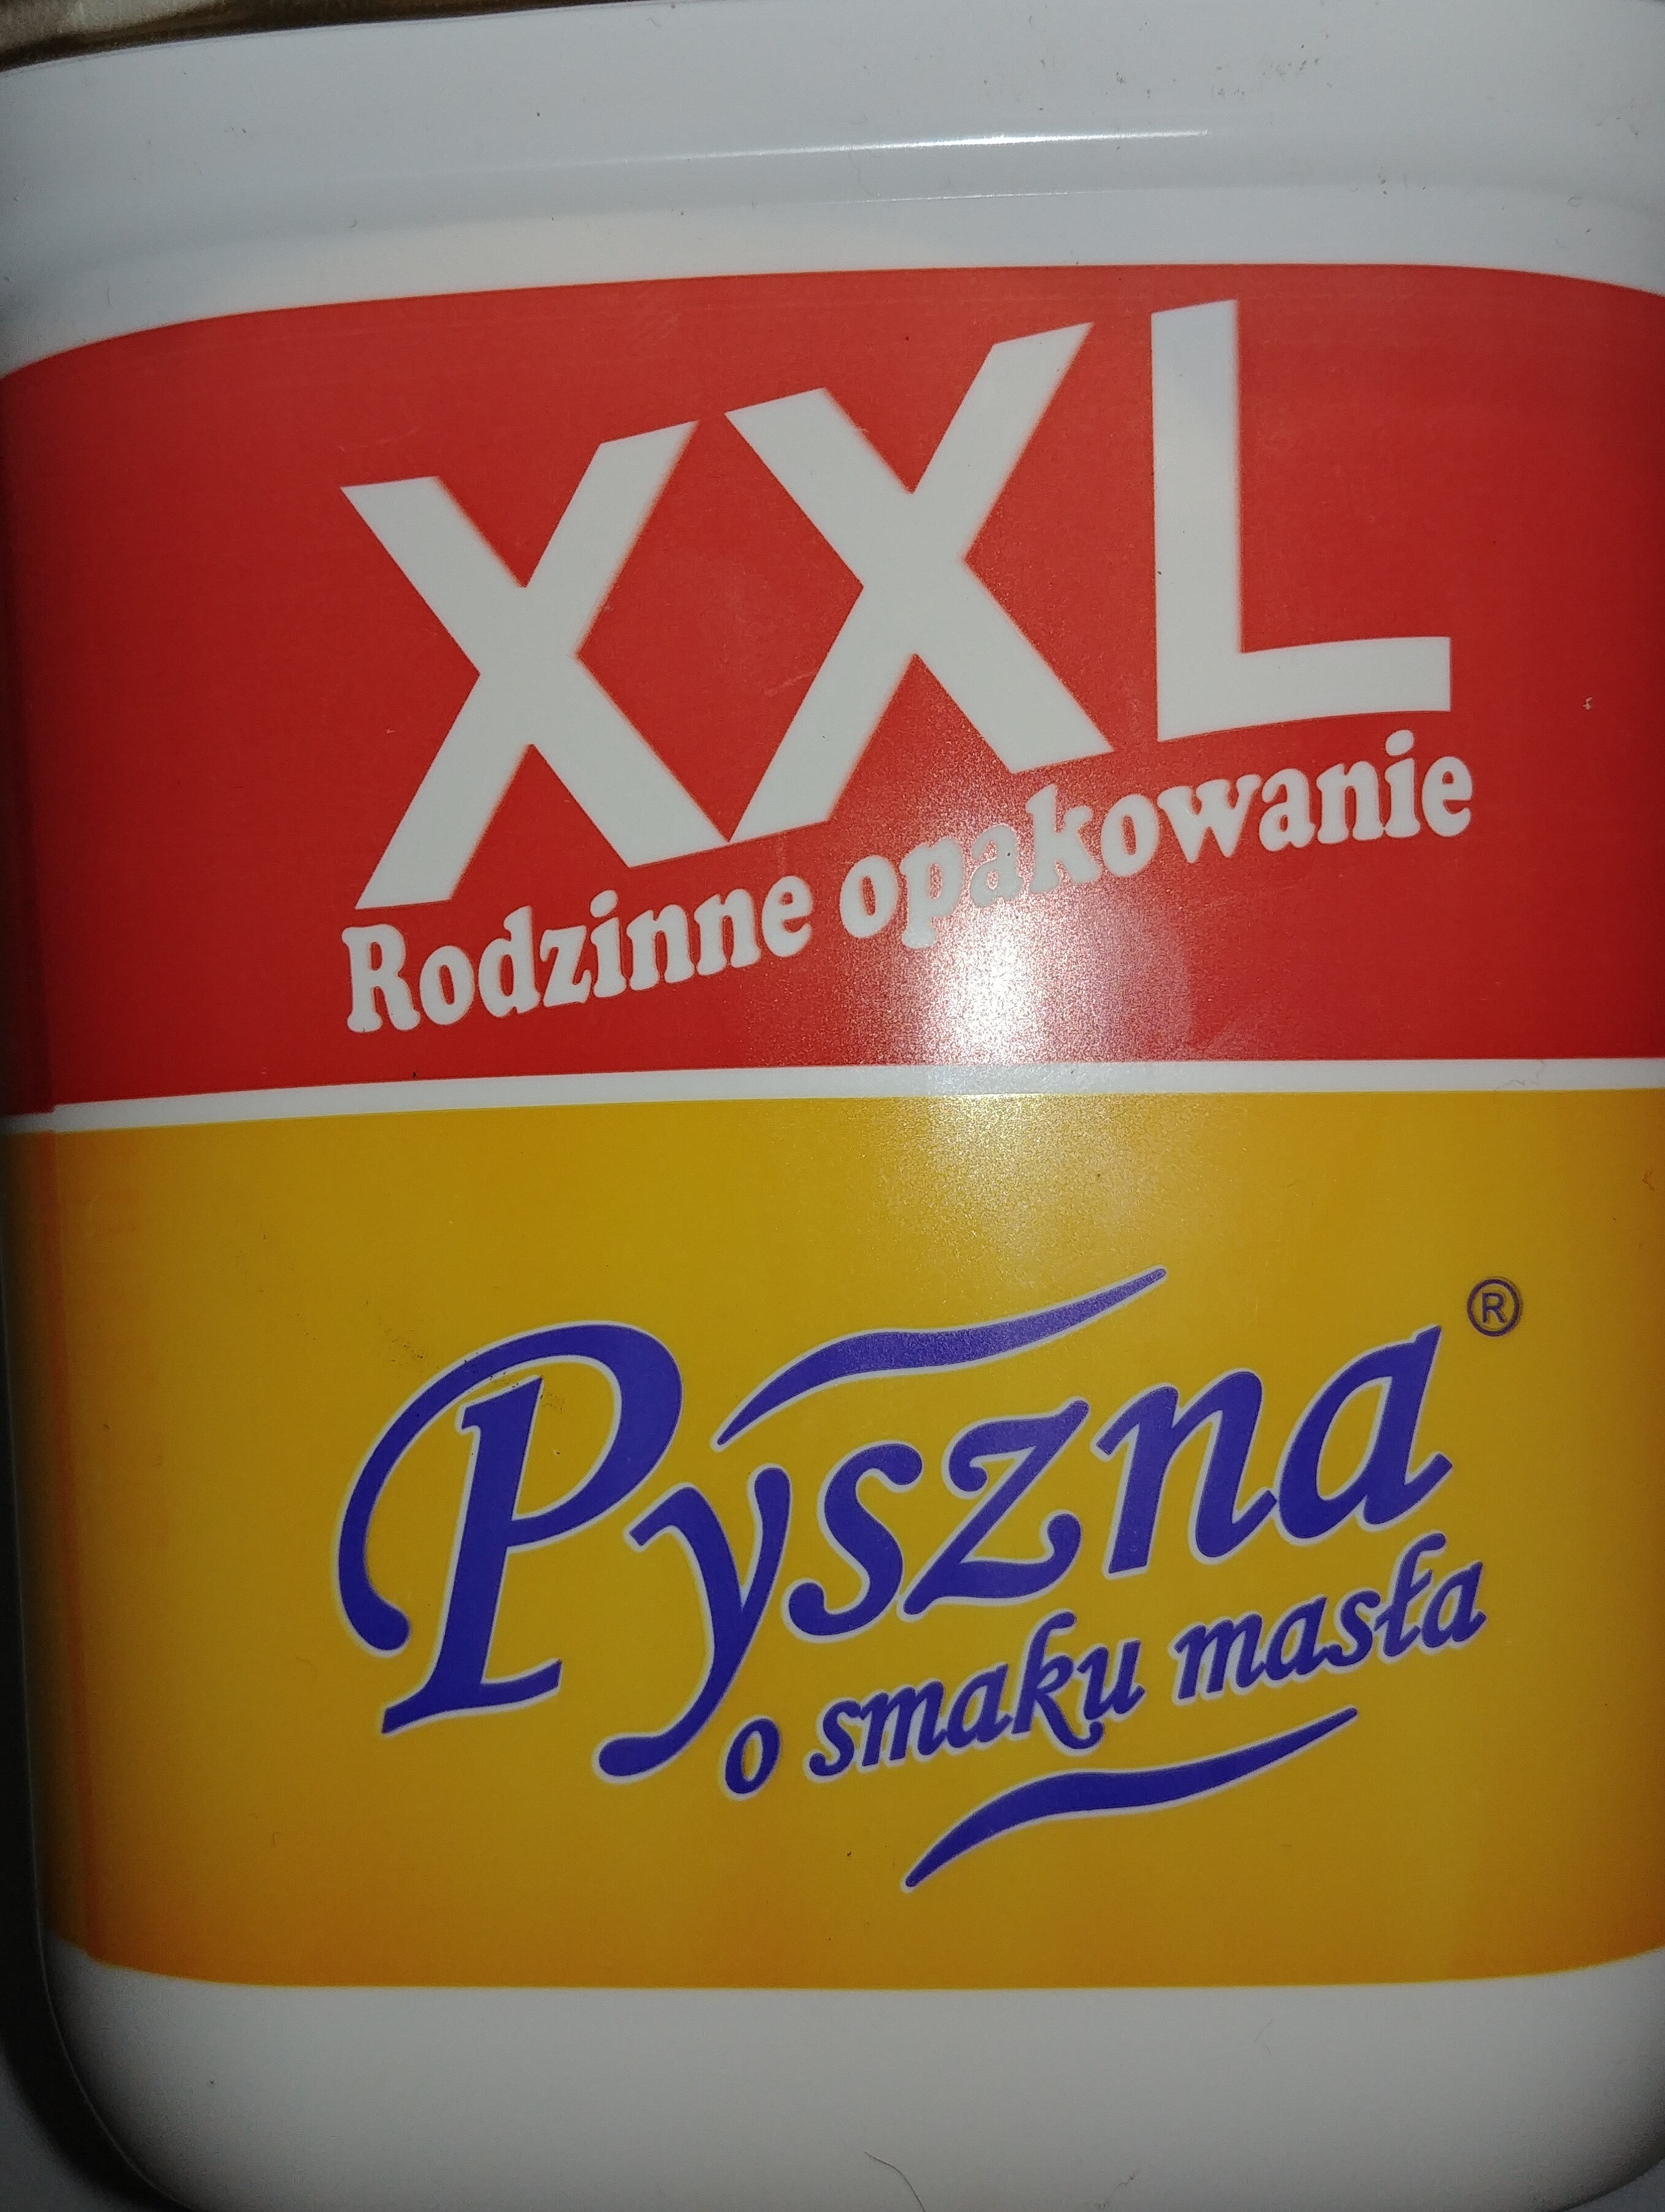 Margaryna Pyszna o smaku masła - Product - pl